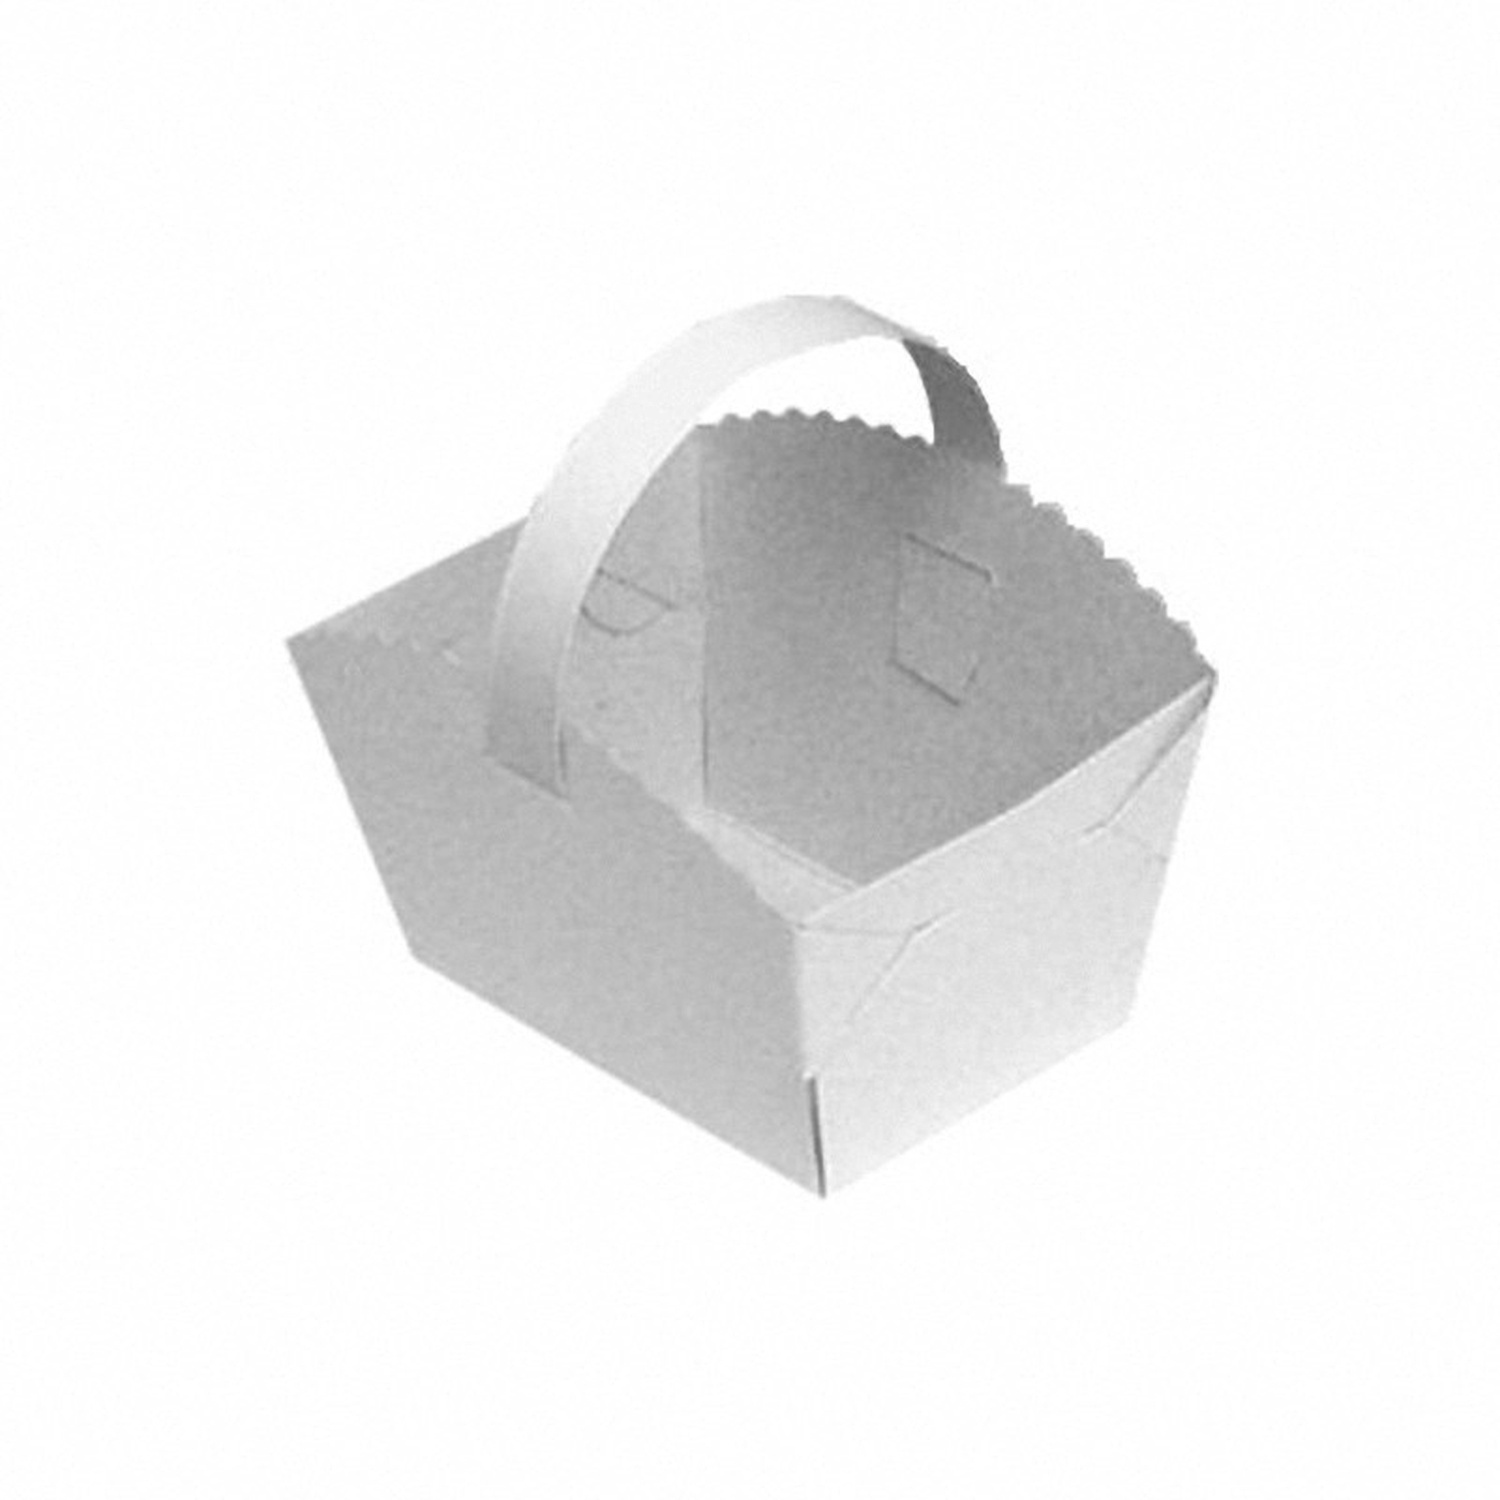 1-PACK 250x Gebäckkörbchen Tragebox mit Henkel für Brötchen 10x8x6cm weiß